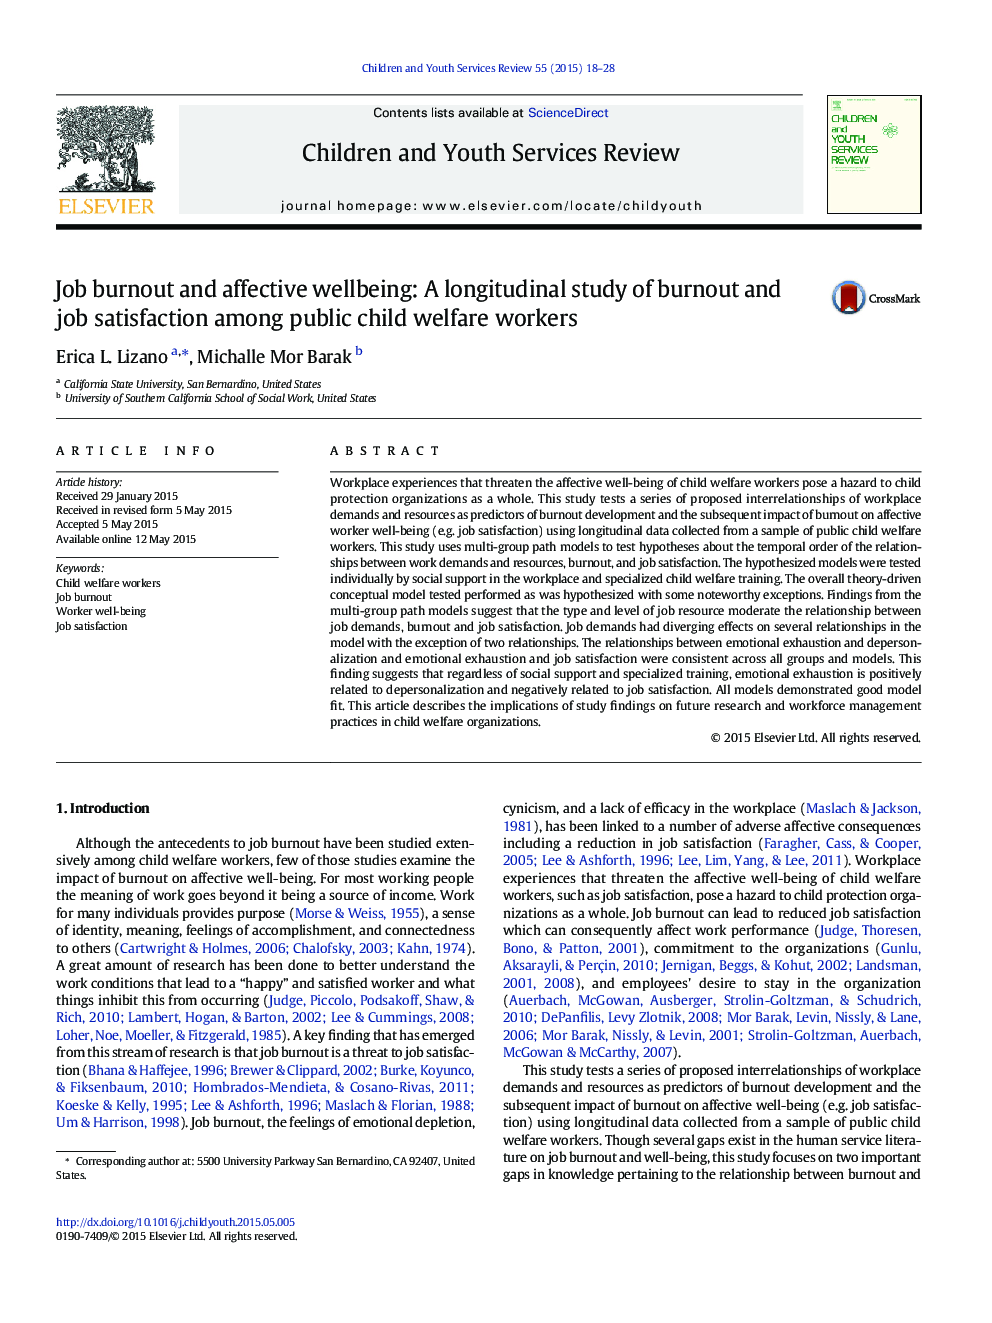 فرسودگی شغلی و سلامت عاطفی: یک مطالعه طولی فرسودگی شغلی و رضایت شغلی در میان کارکنان رفاهی کودکان 